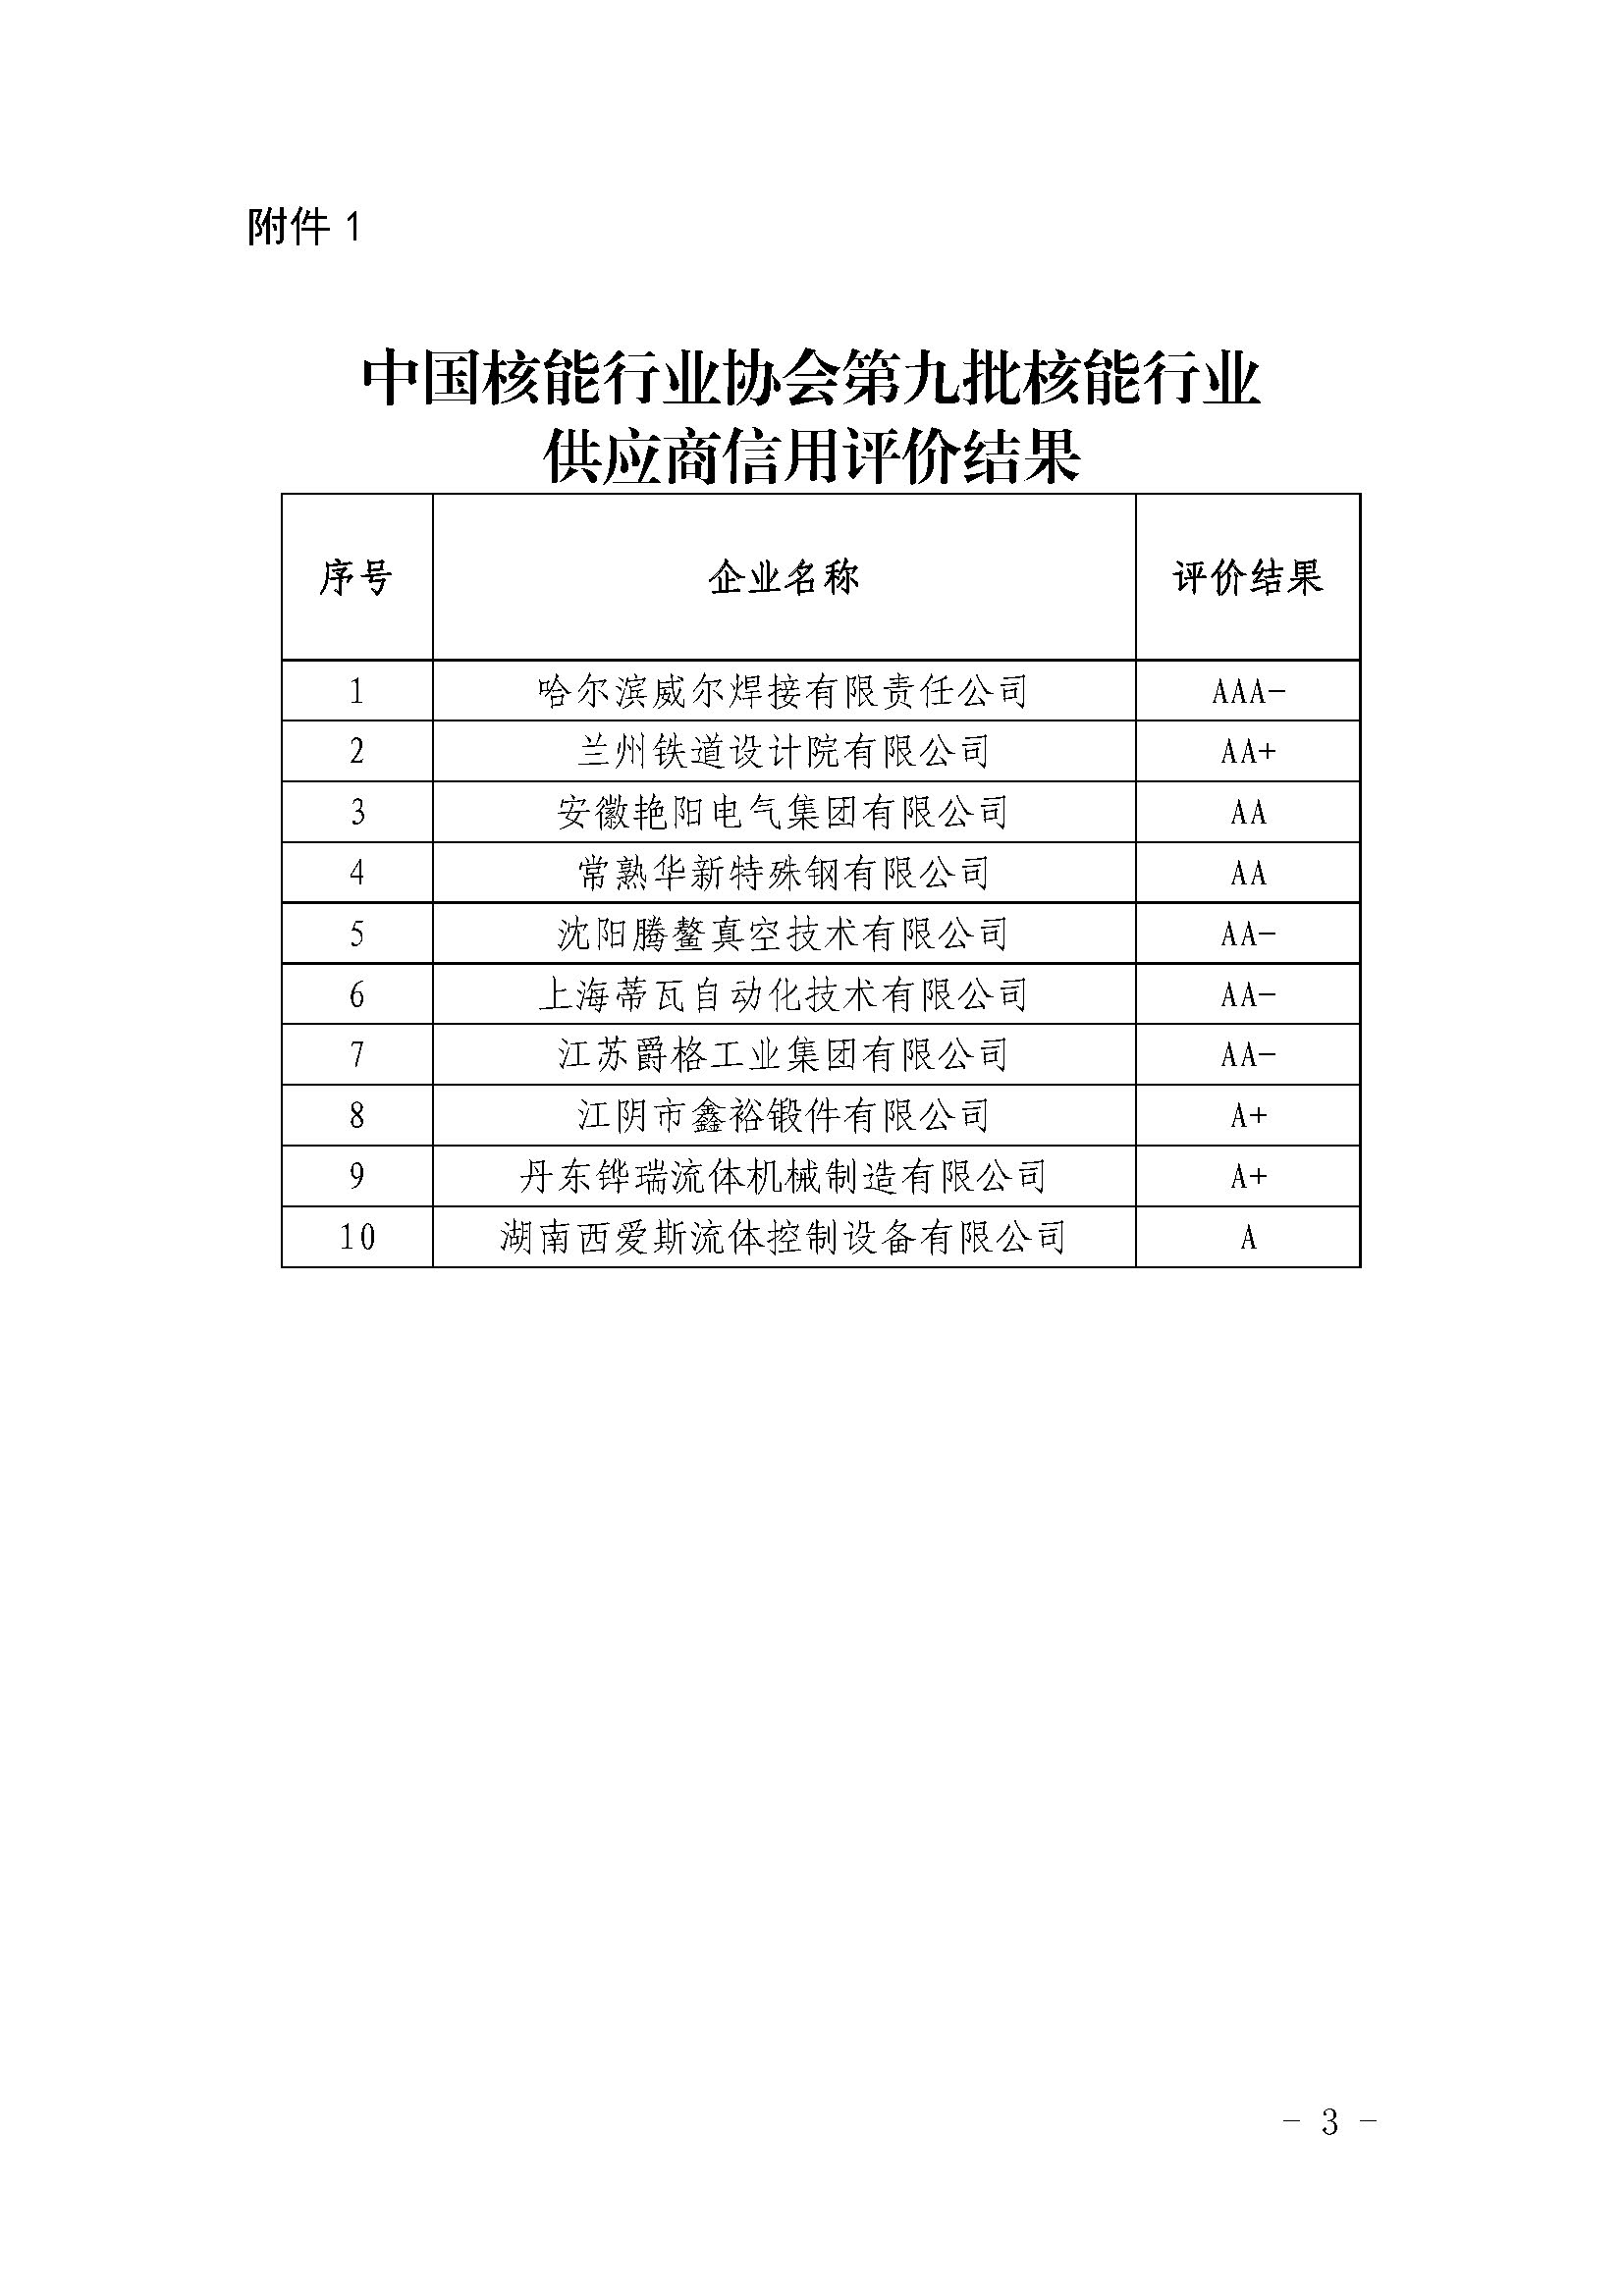 关于中国核能行业协会第九批核能行业供应商信用评价结果及年度监督评价结果的公示_页面_3.jpg